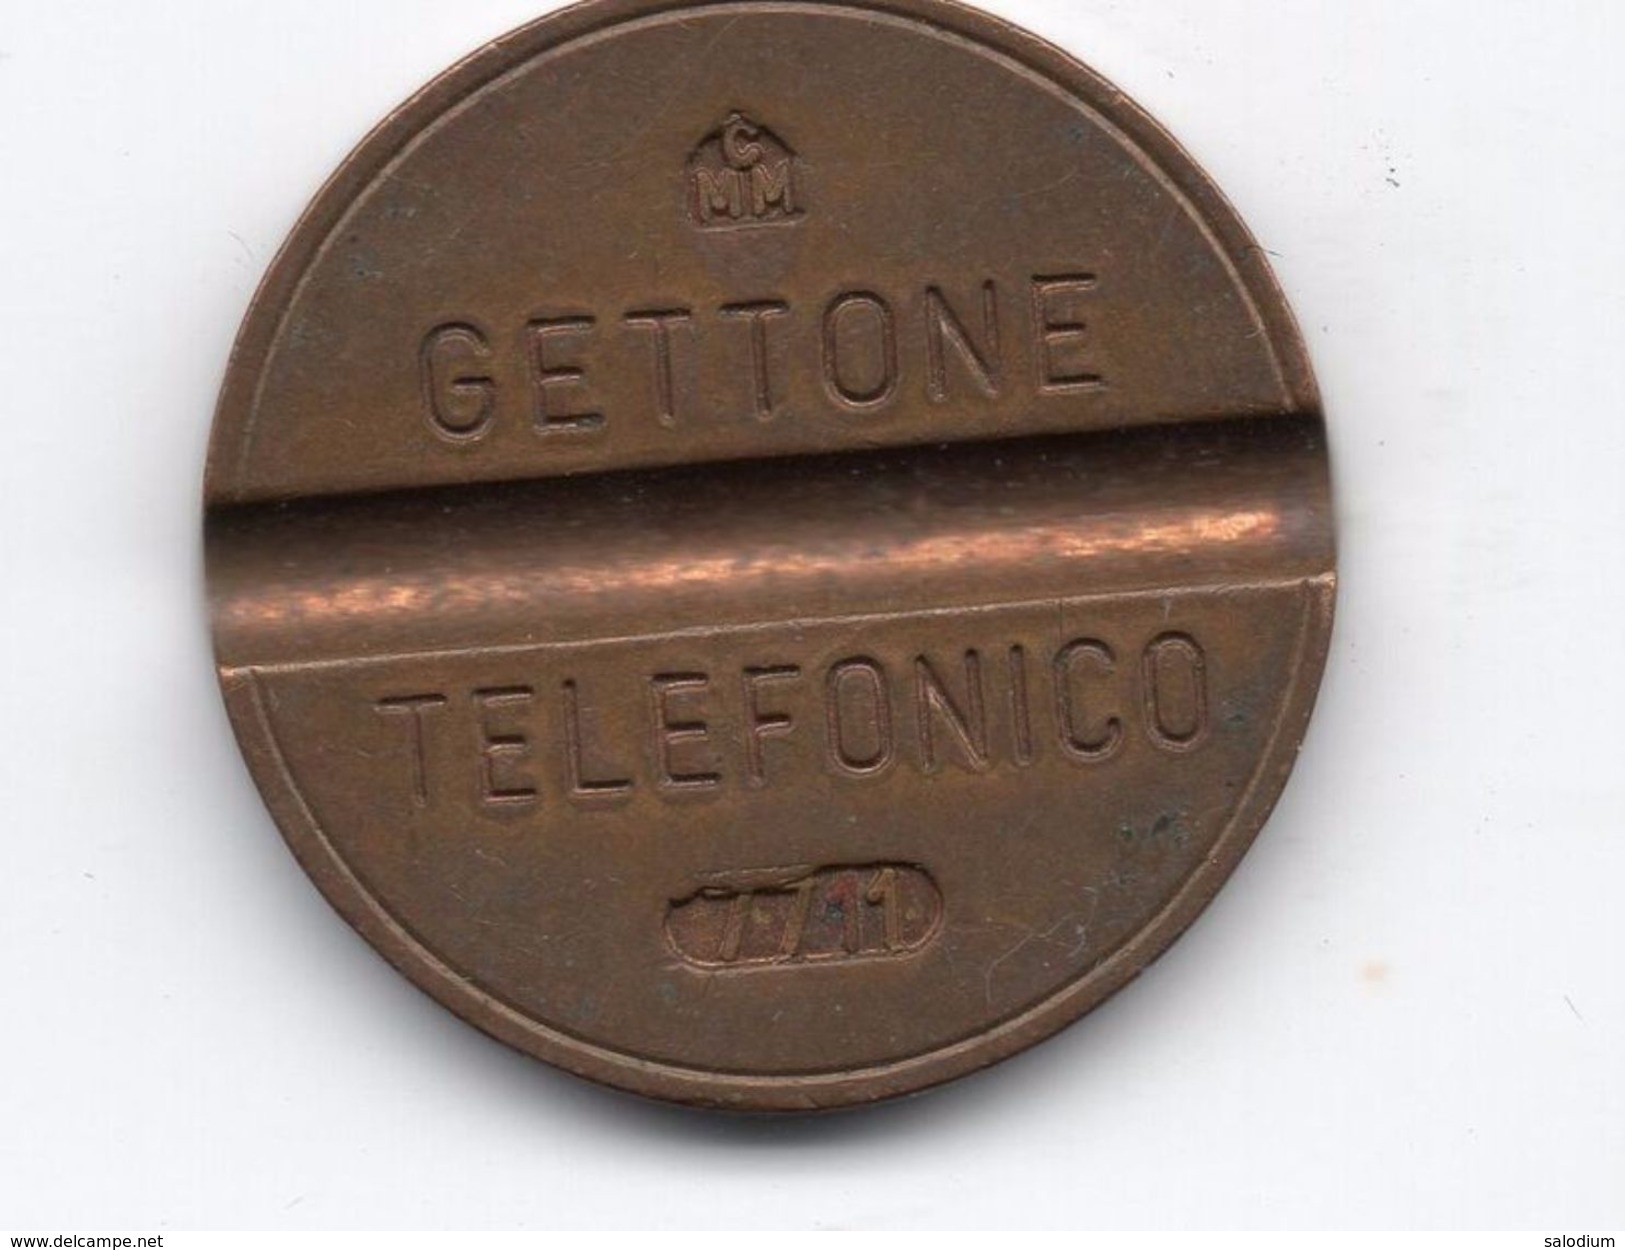 Gettone Telefonico 7711  Token Telephone - (Id-860) - Professionnels/De Société